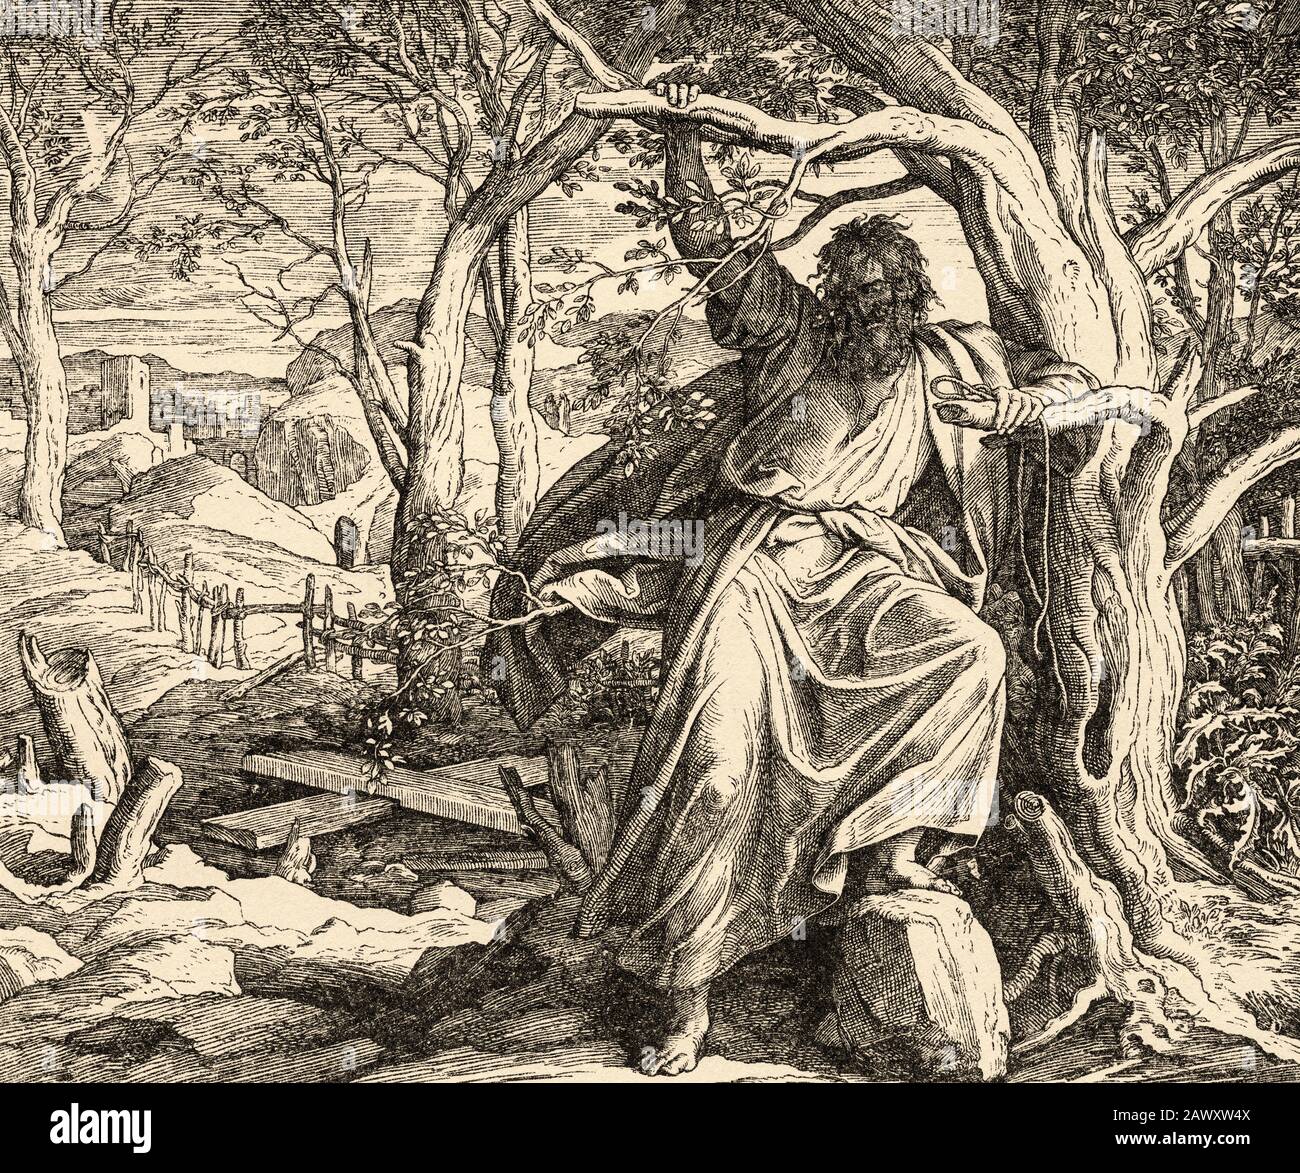 Désespoir de Judas. Judas Iscariot le traître se pend dans un arbre. Matthieu livre, l'histoire sacrée biblique du Nouveau Testament. Ancienne gravure Banque D'Images